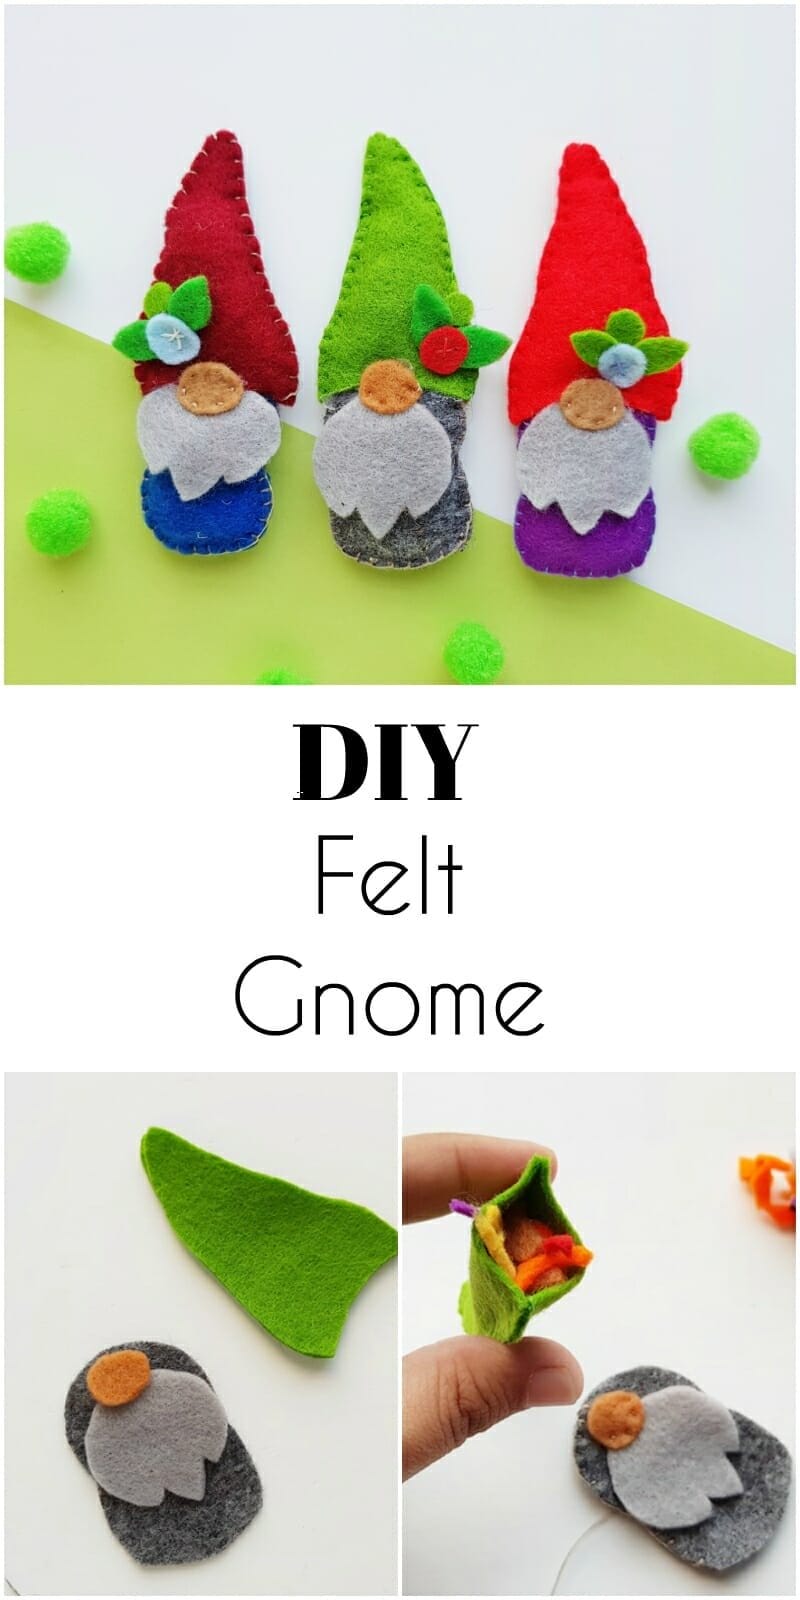 DIY gnome plush free pattern